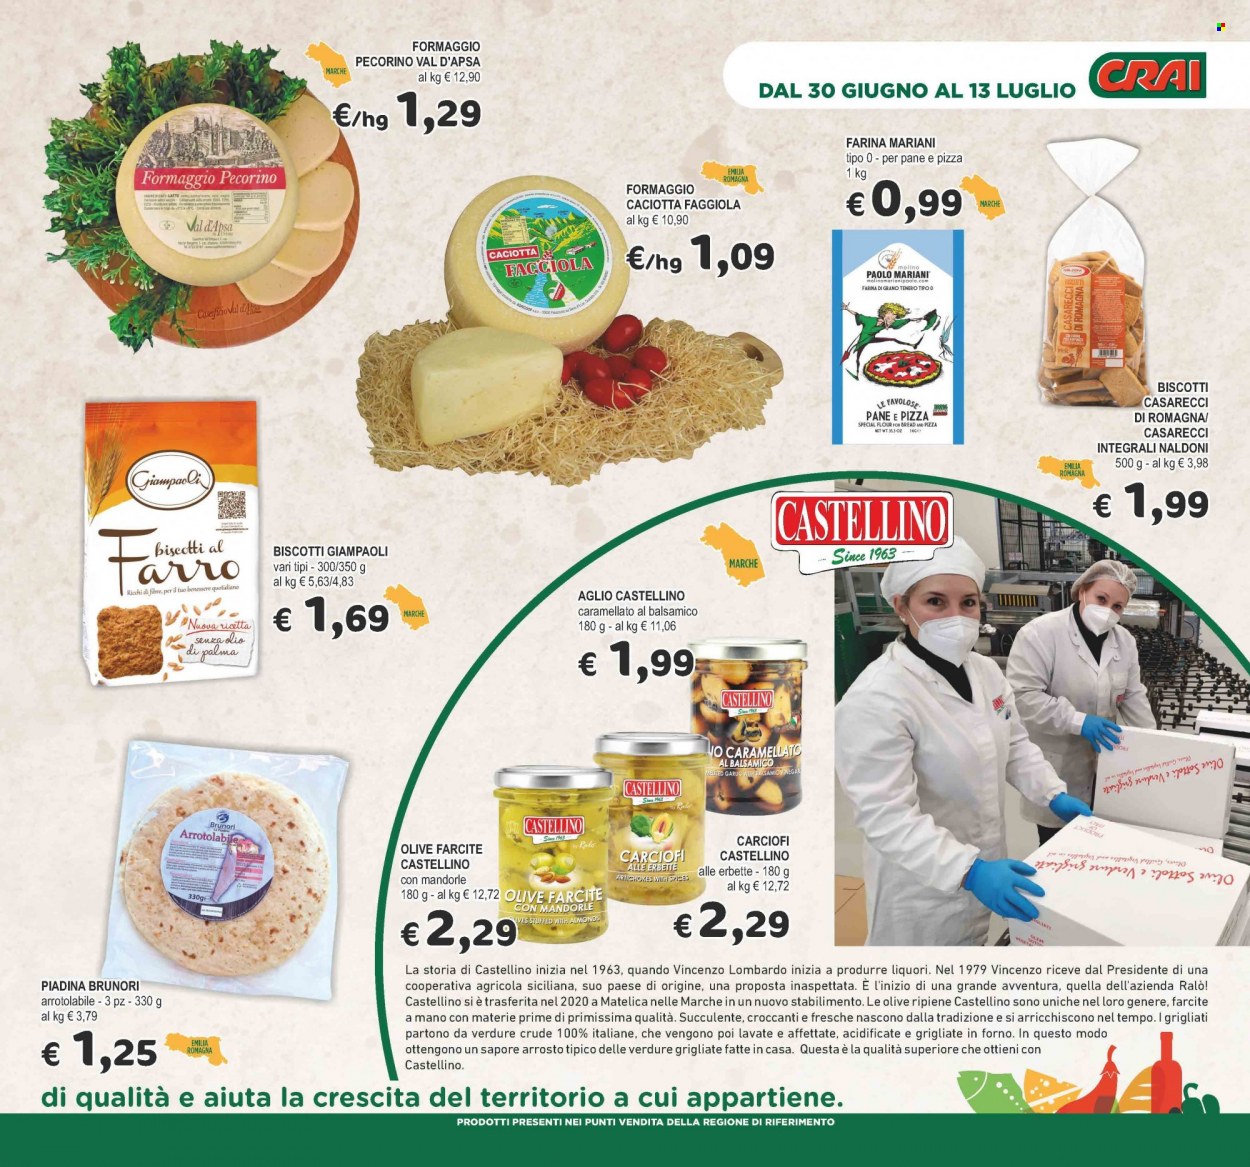 thumbnail - Volantino CRAI - 30/6/2022 - 13/7/2022 - Prodotti in offerta - piadine, aglio, carciofi, formaggio, caciotta, pecorino, pizza, biscotti, farina, olive. Pagina 9.